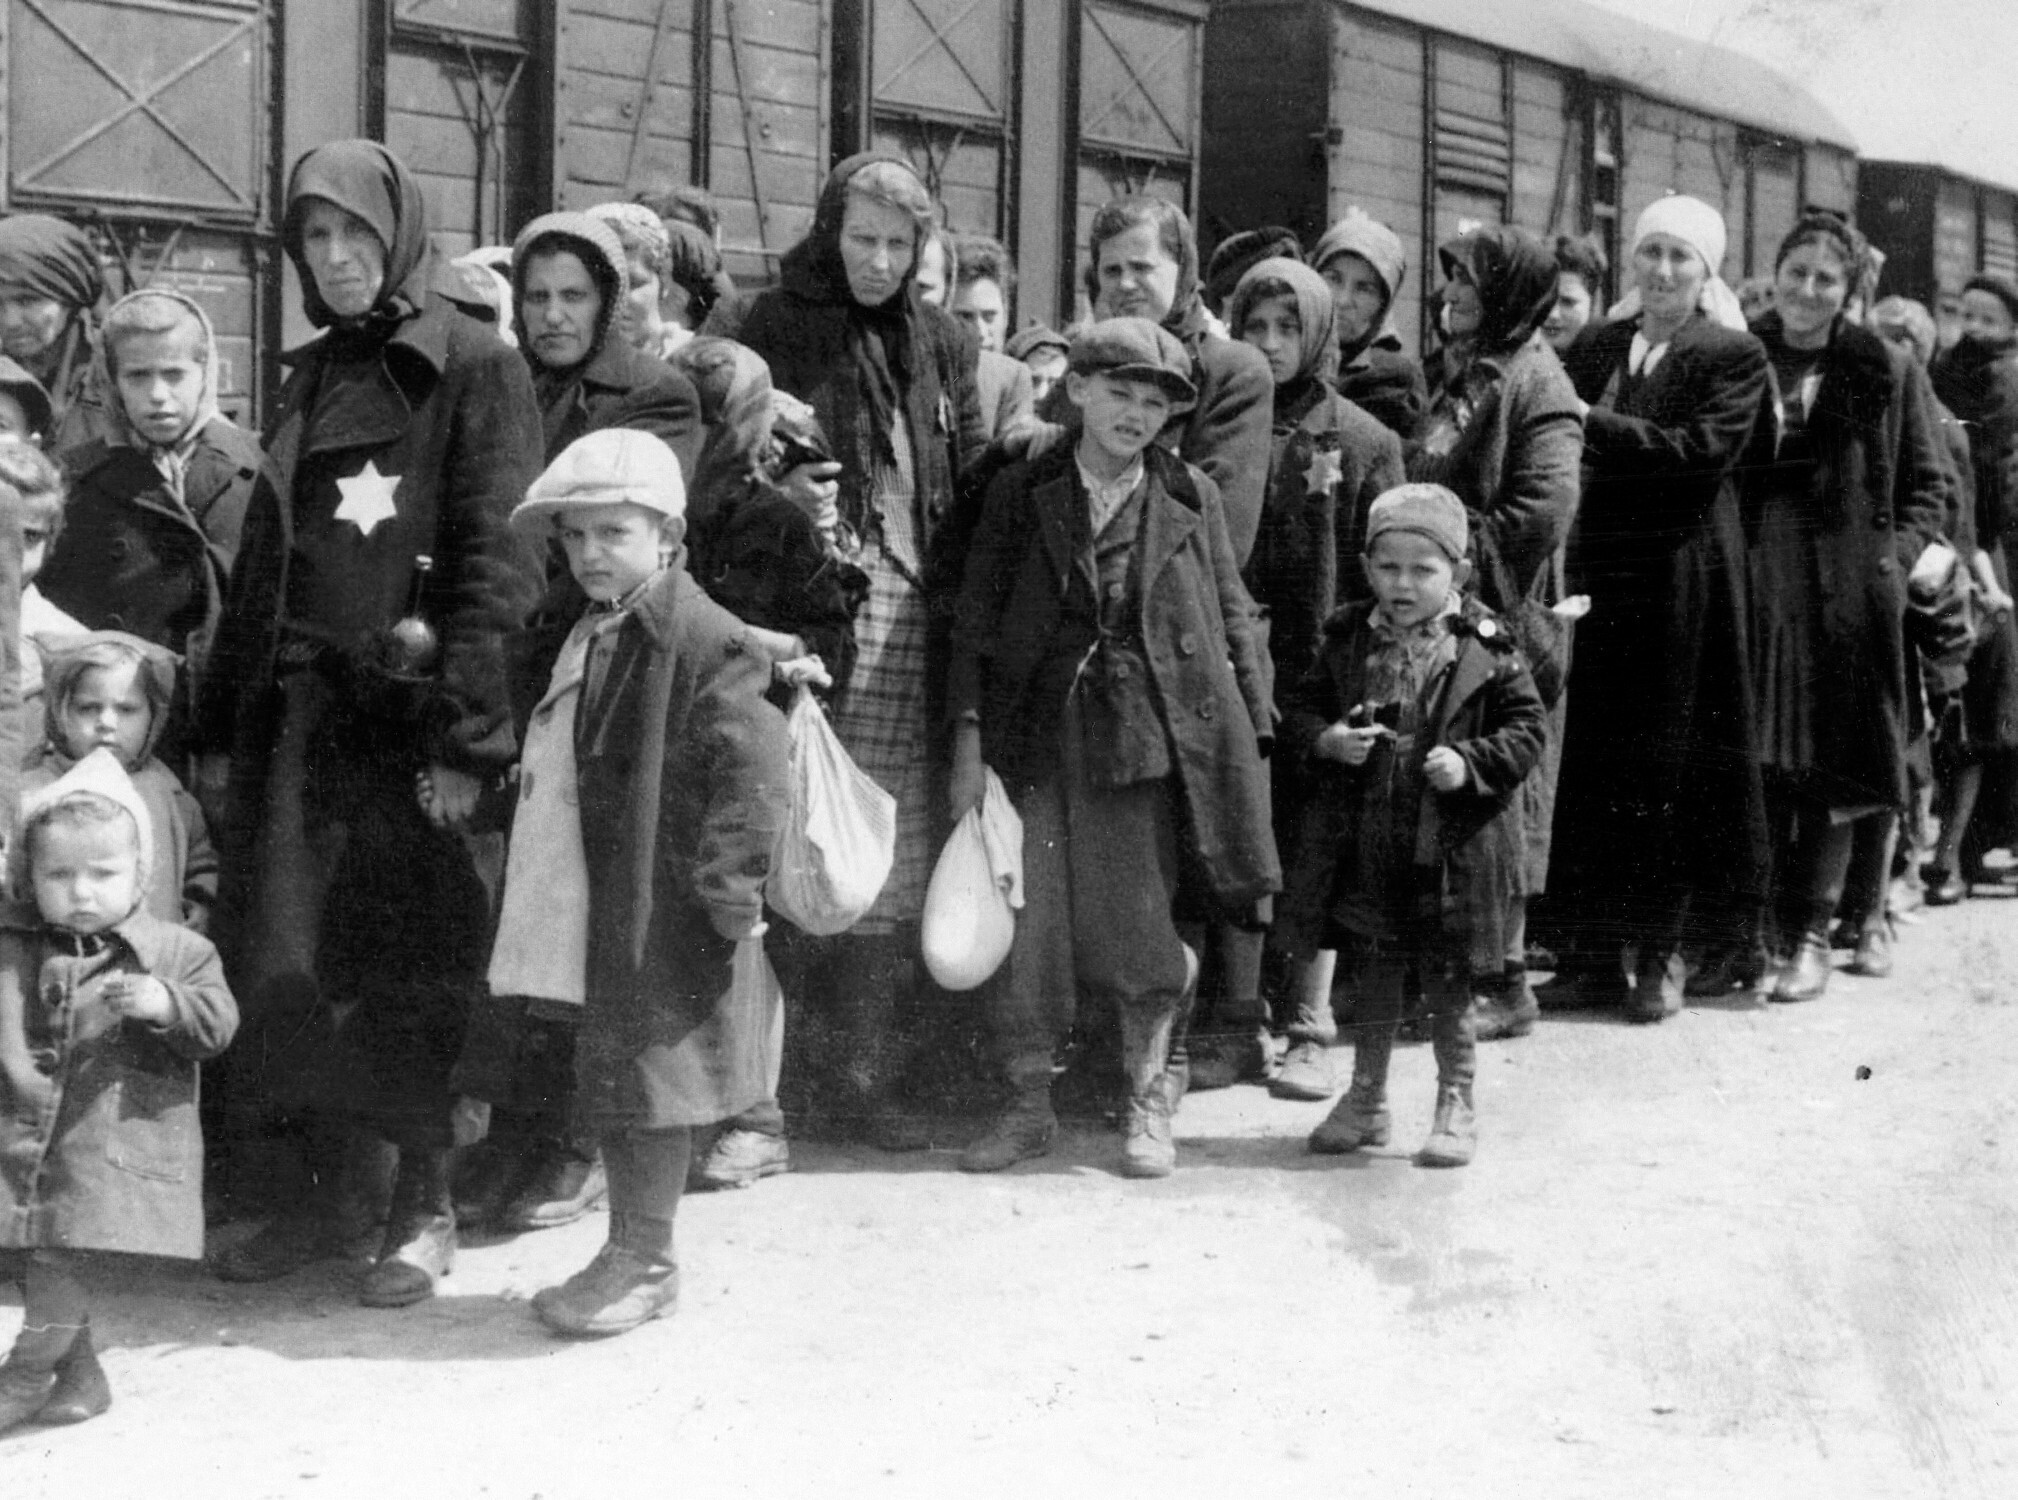 Dzięki danym ze spisu powszechnego Niemcy na ogromną skalę zorganizowali deportację Żydów do obozów zagłady w Europie Wschodniej, ok. 1942 r. 